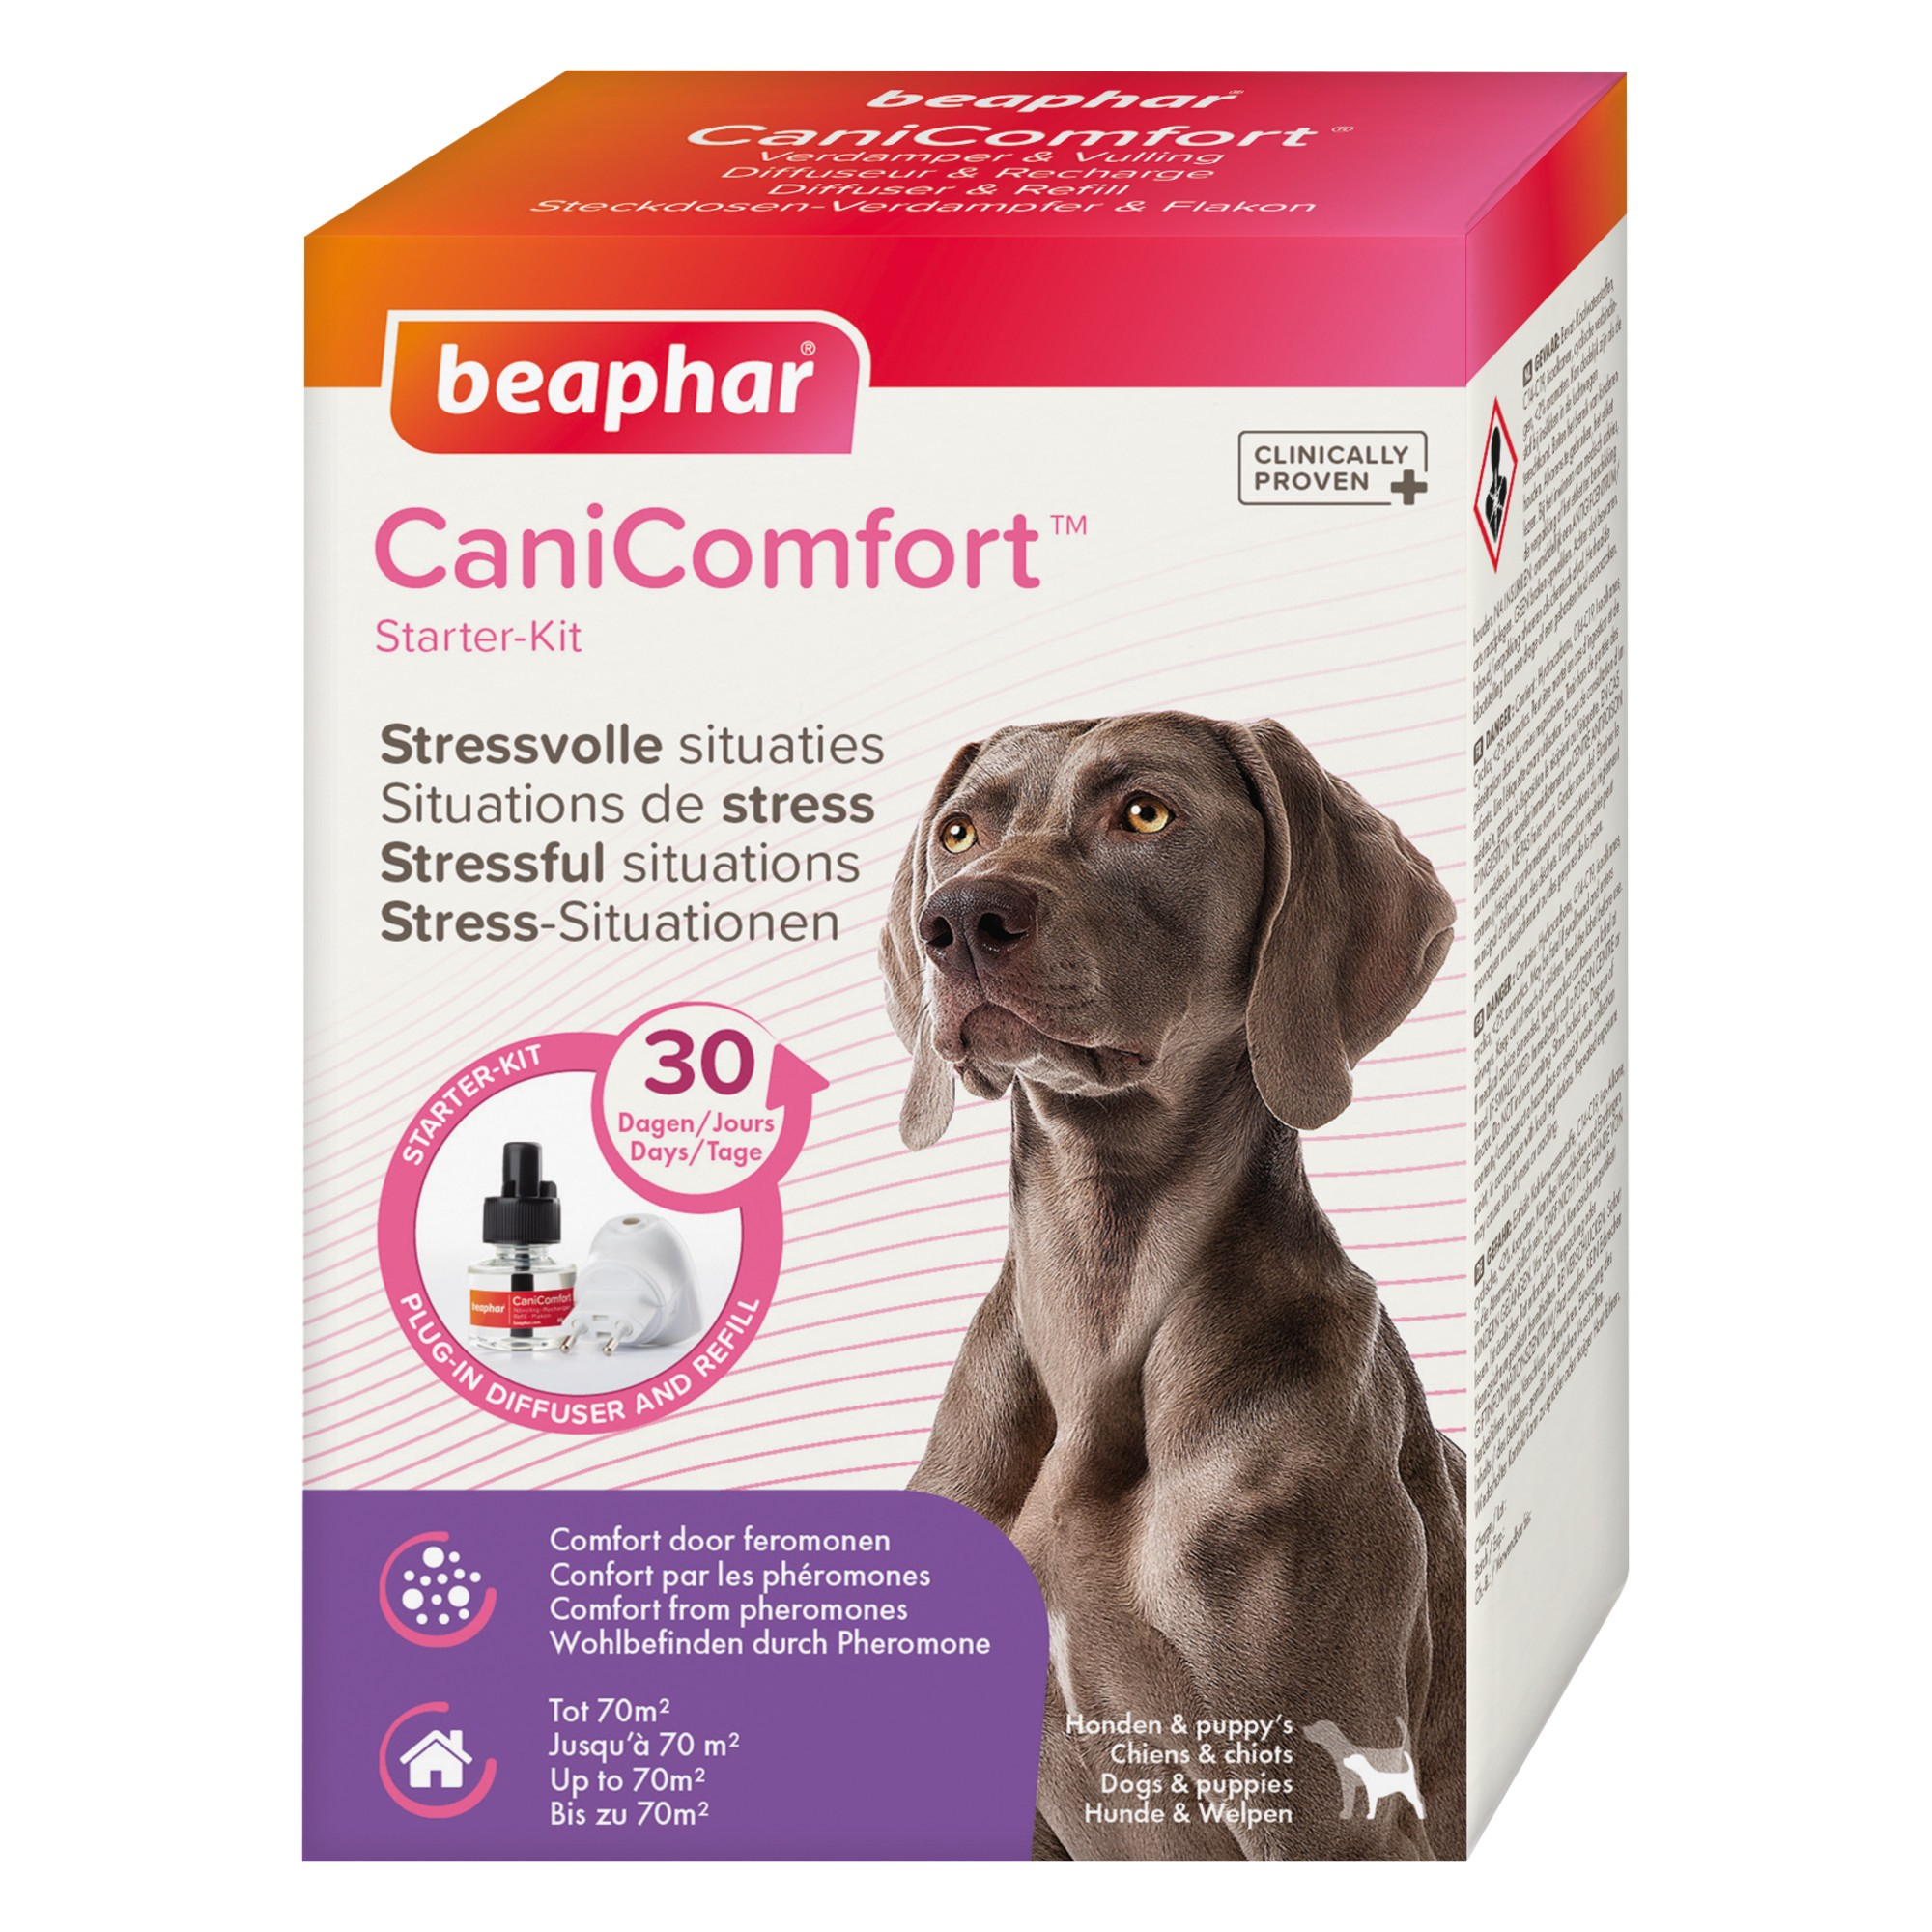 CaniComfort, diffuseur et recharge aux phéromones pour chien et chiot